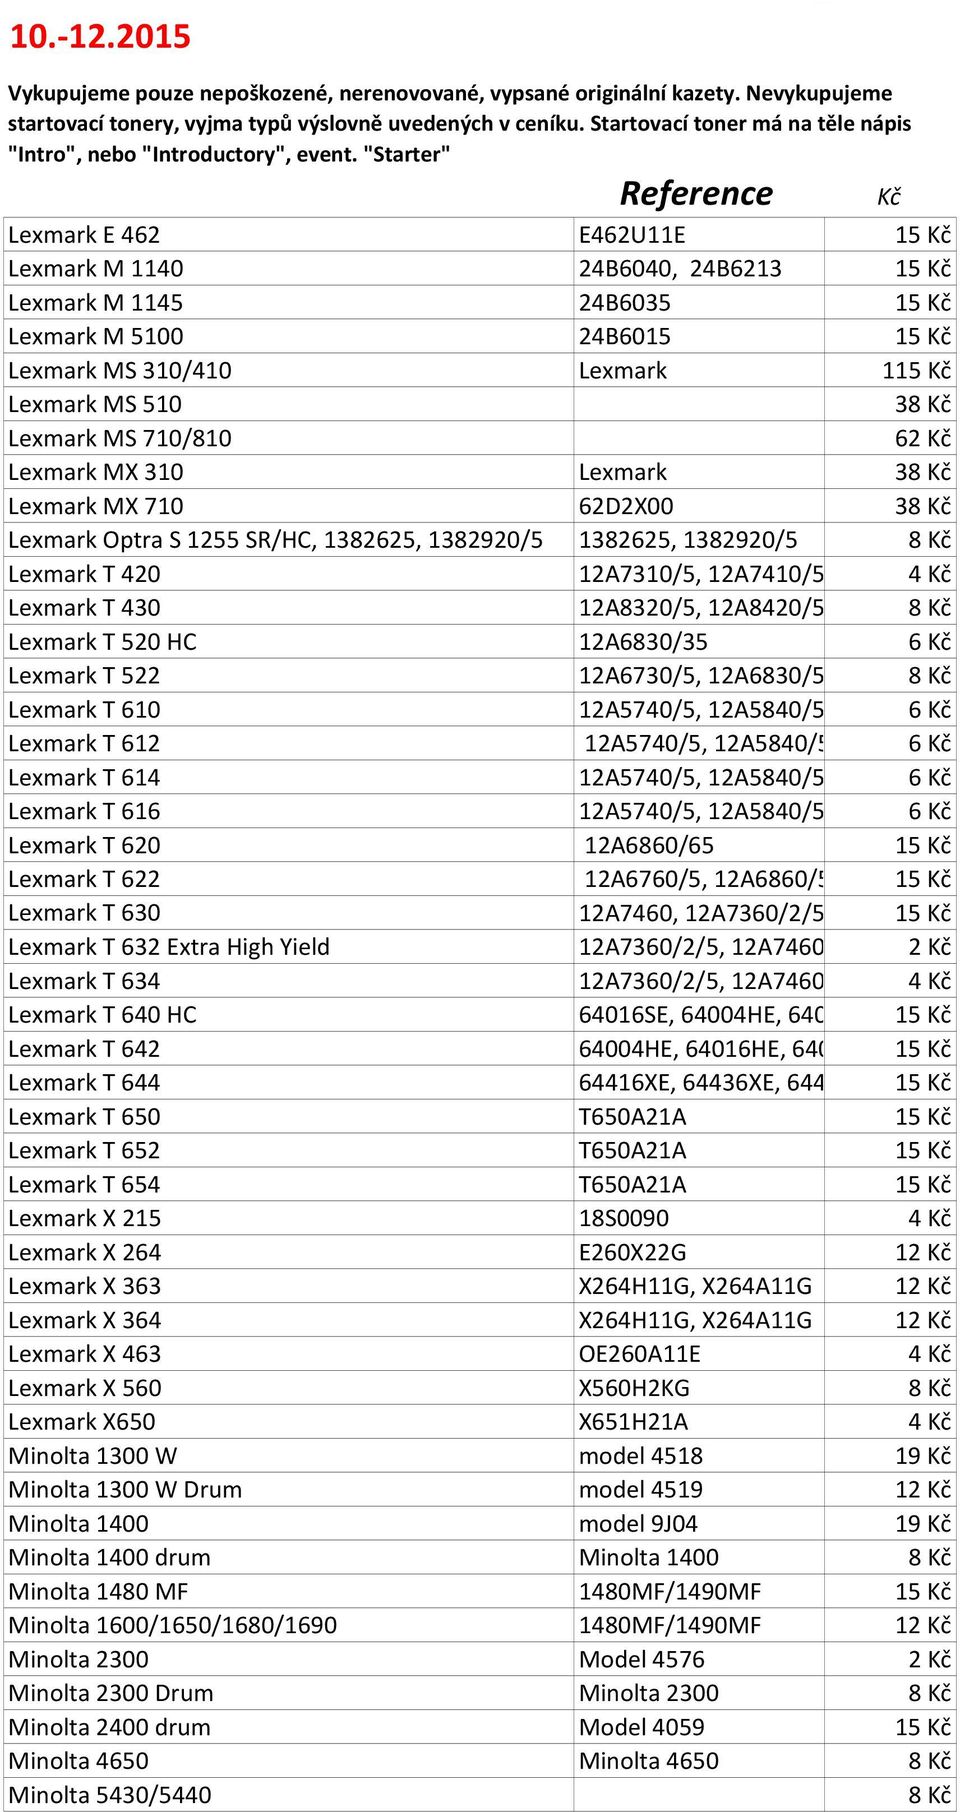 6 Lexmark T 522 12A6730/5, 12A6830/5/9 Lexmark T 610 12A5740/5, 12A5840/5/9 6 Lexmark T 612 12A5740/5, 12A5840/5/9 6 Lexmark T 614 12A5740/5, 12A5840/5/9 6 Lexmark T 616 12A5740/5, 12A5840/5/9 6